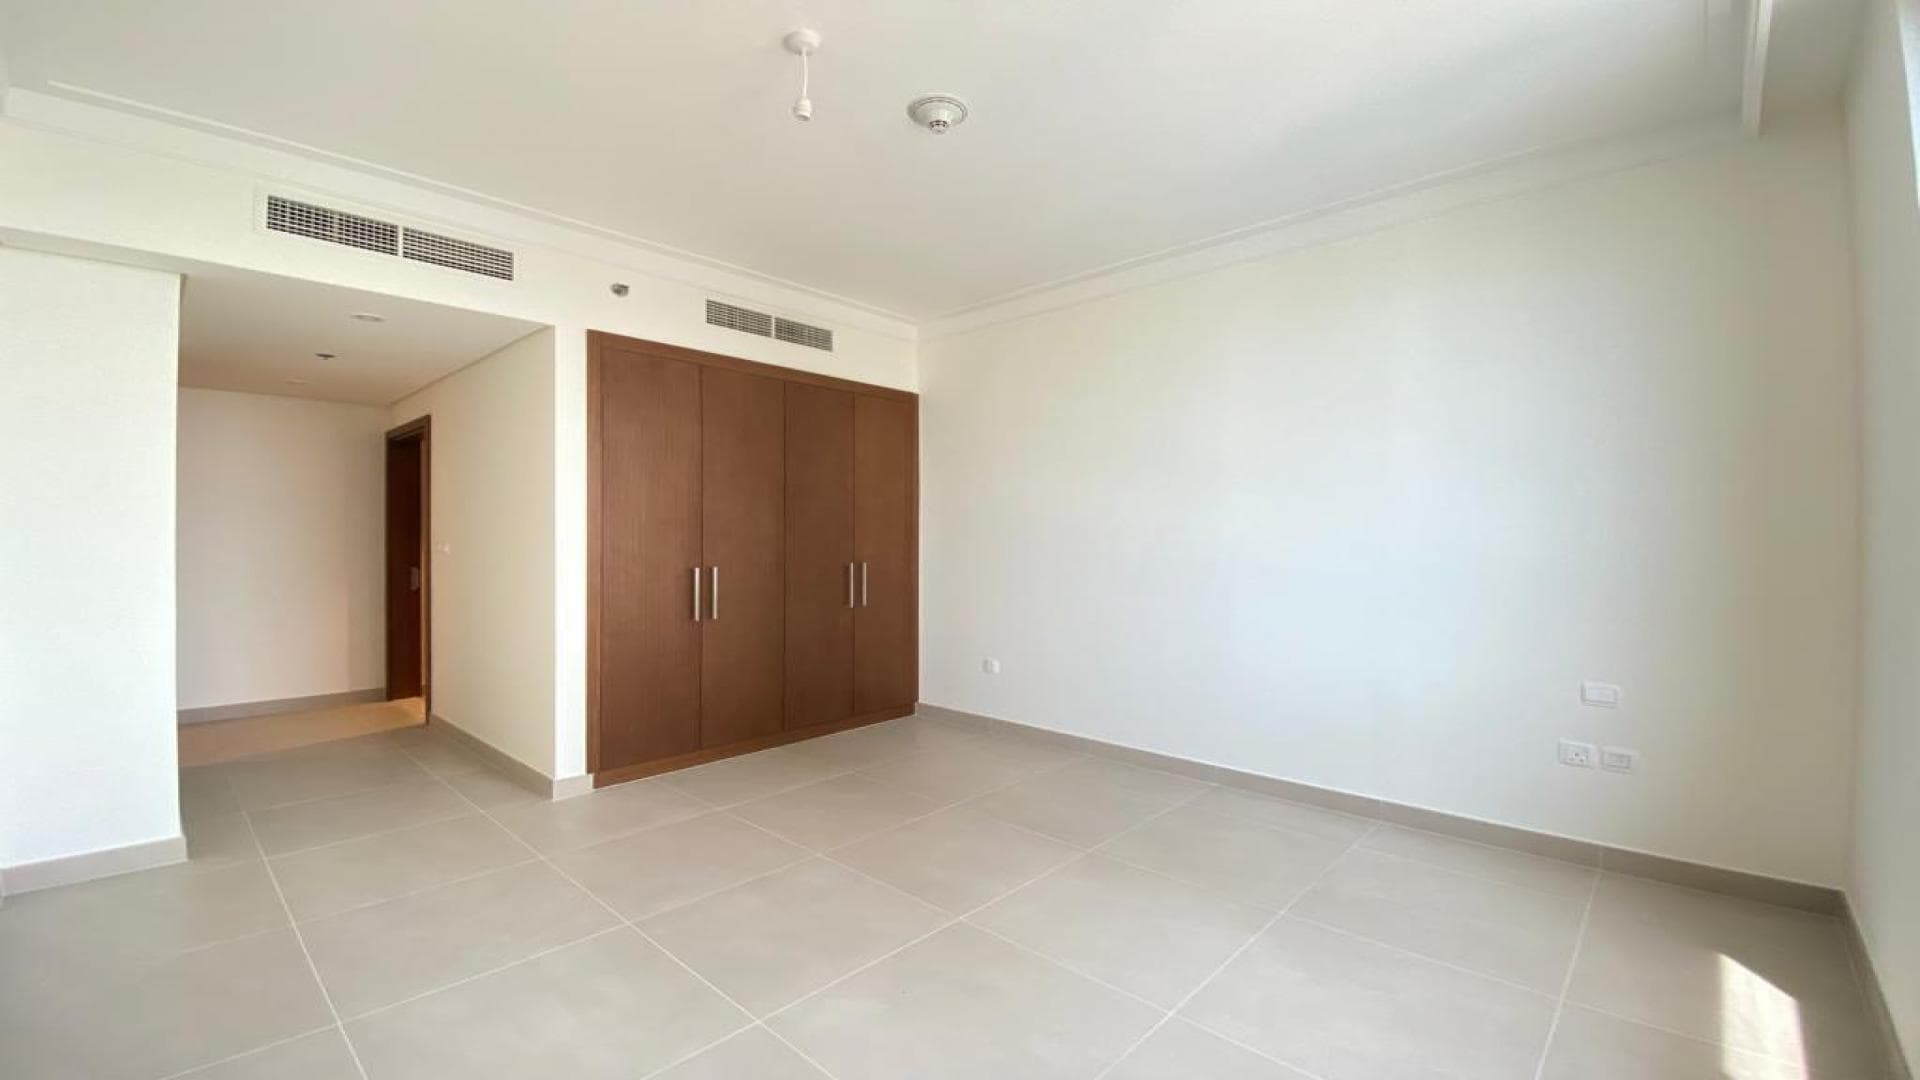 3 Bedroom Apartment For Sale Al Ramth 44 Lp34858 28937eddff681800.jpeg